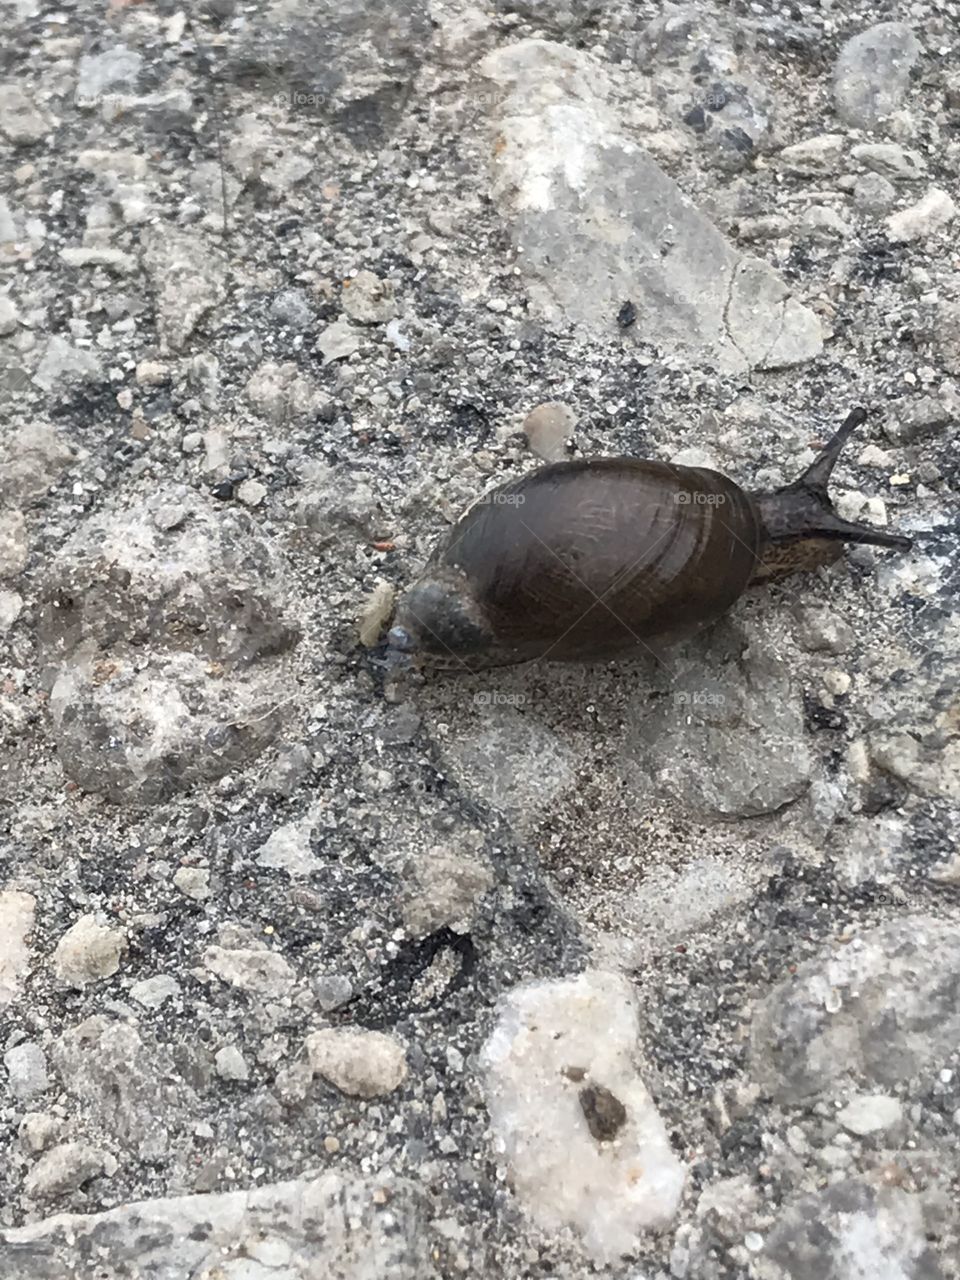 Cute little snail